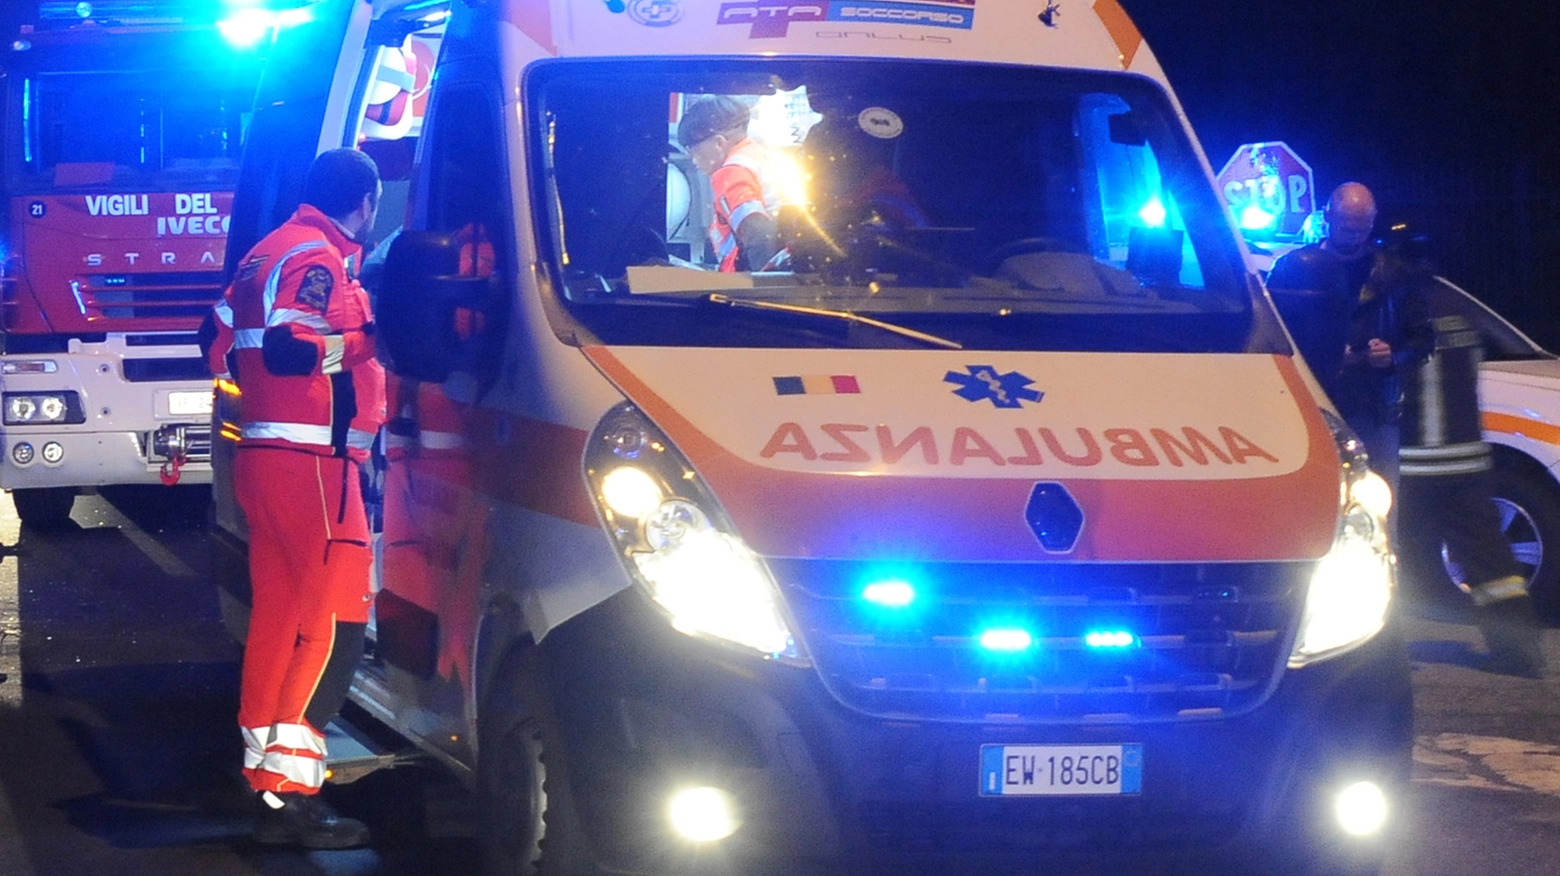 Ambulanza nella notte (immagine di repertorio)